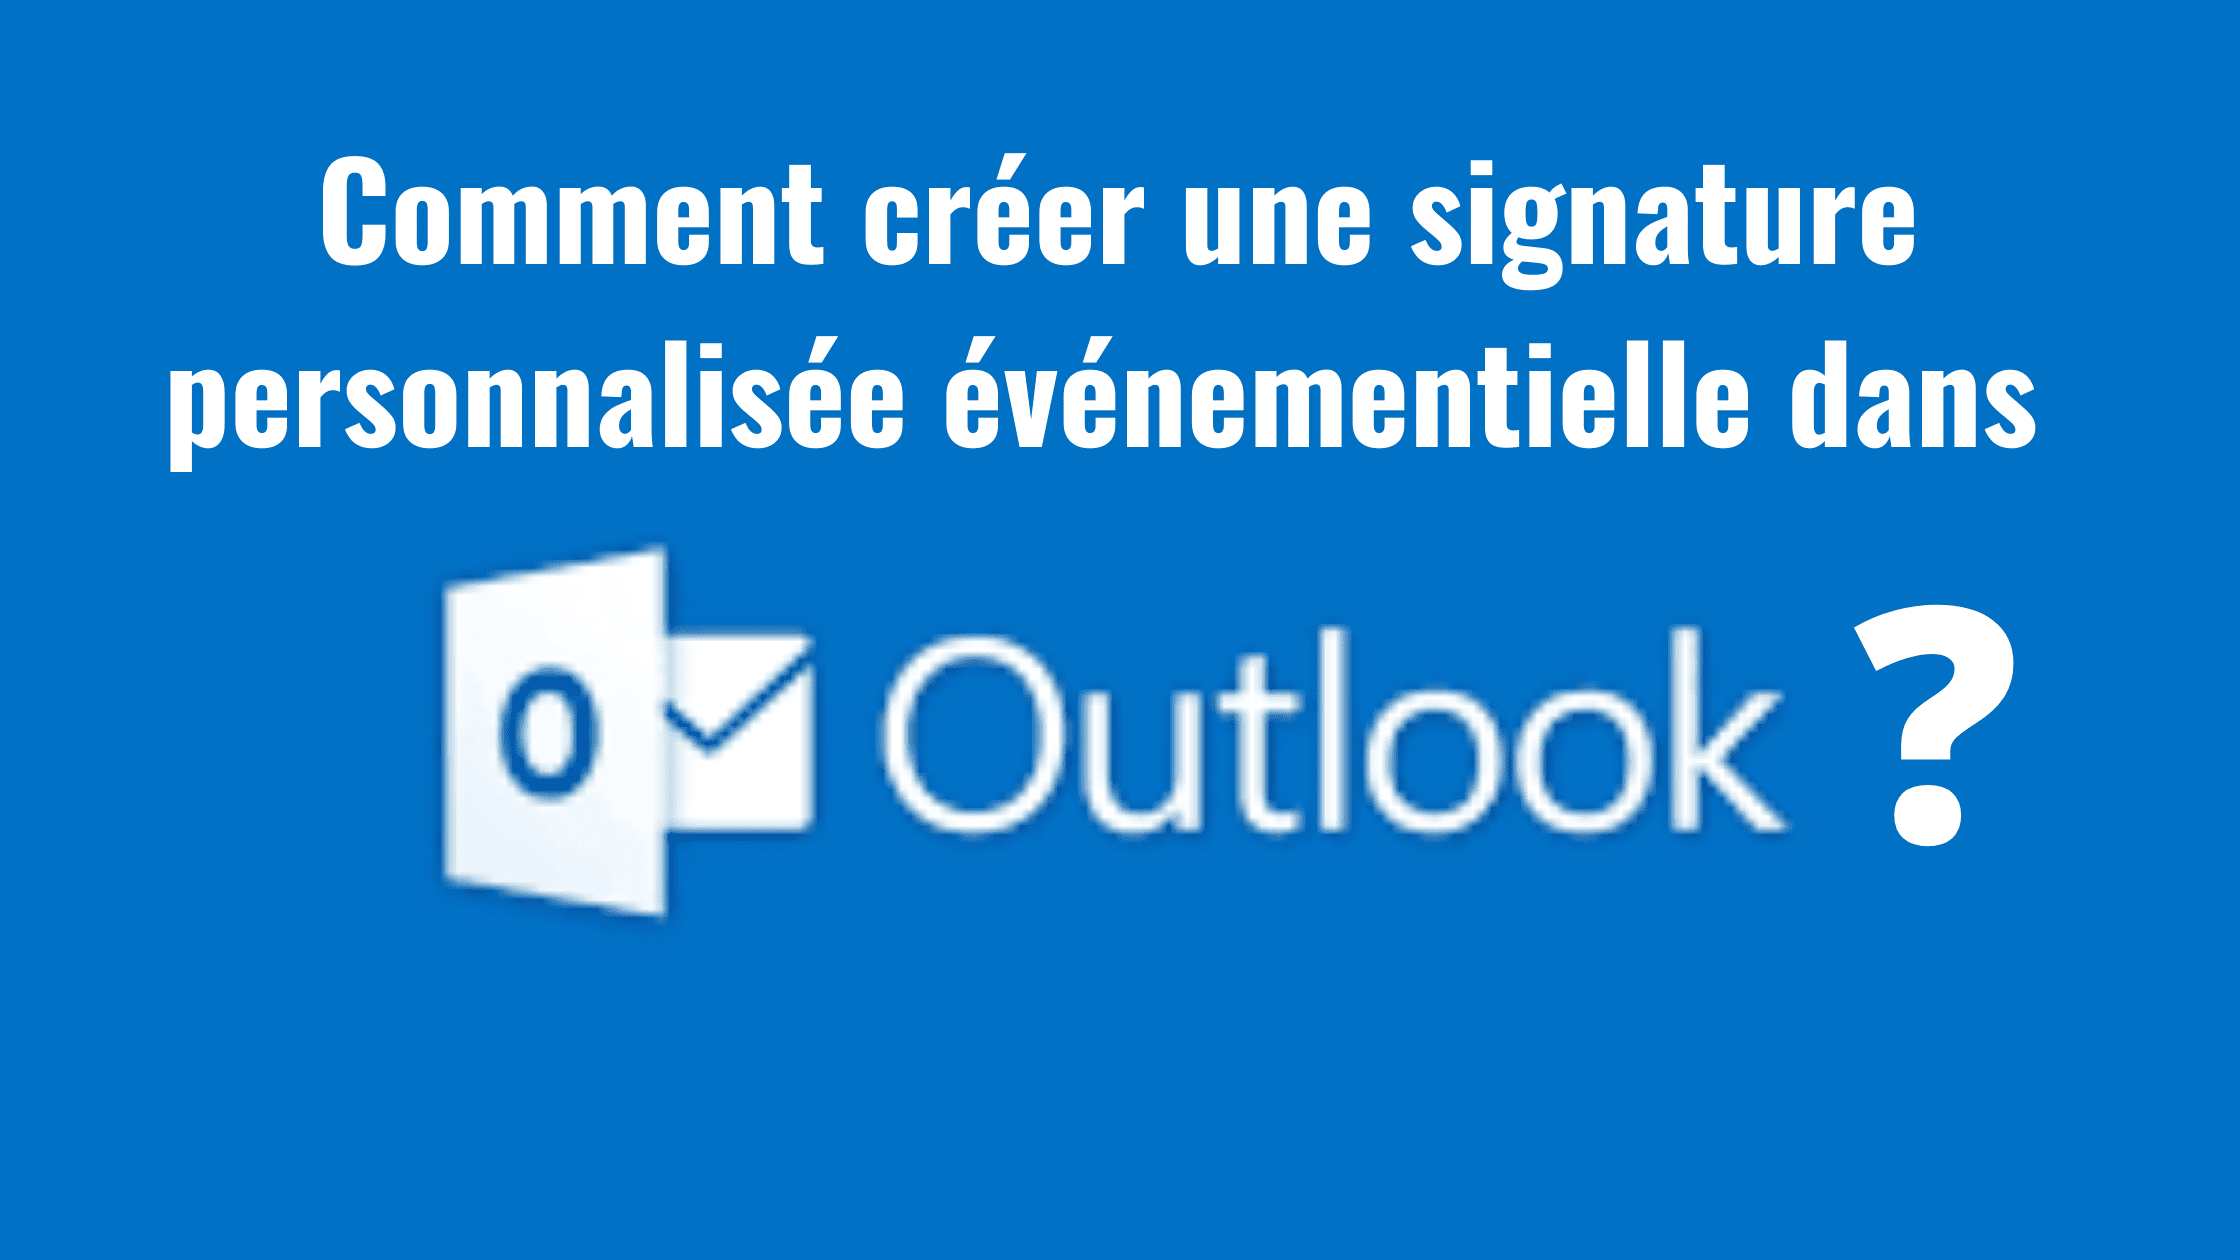 Comment créer une signature personnalisée événementielle dans Outlook ? 5